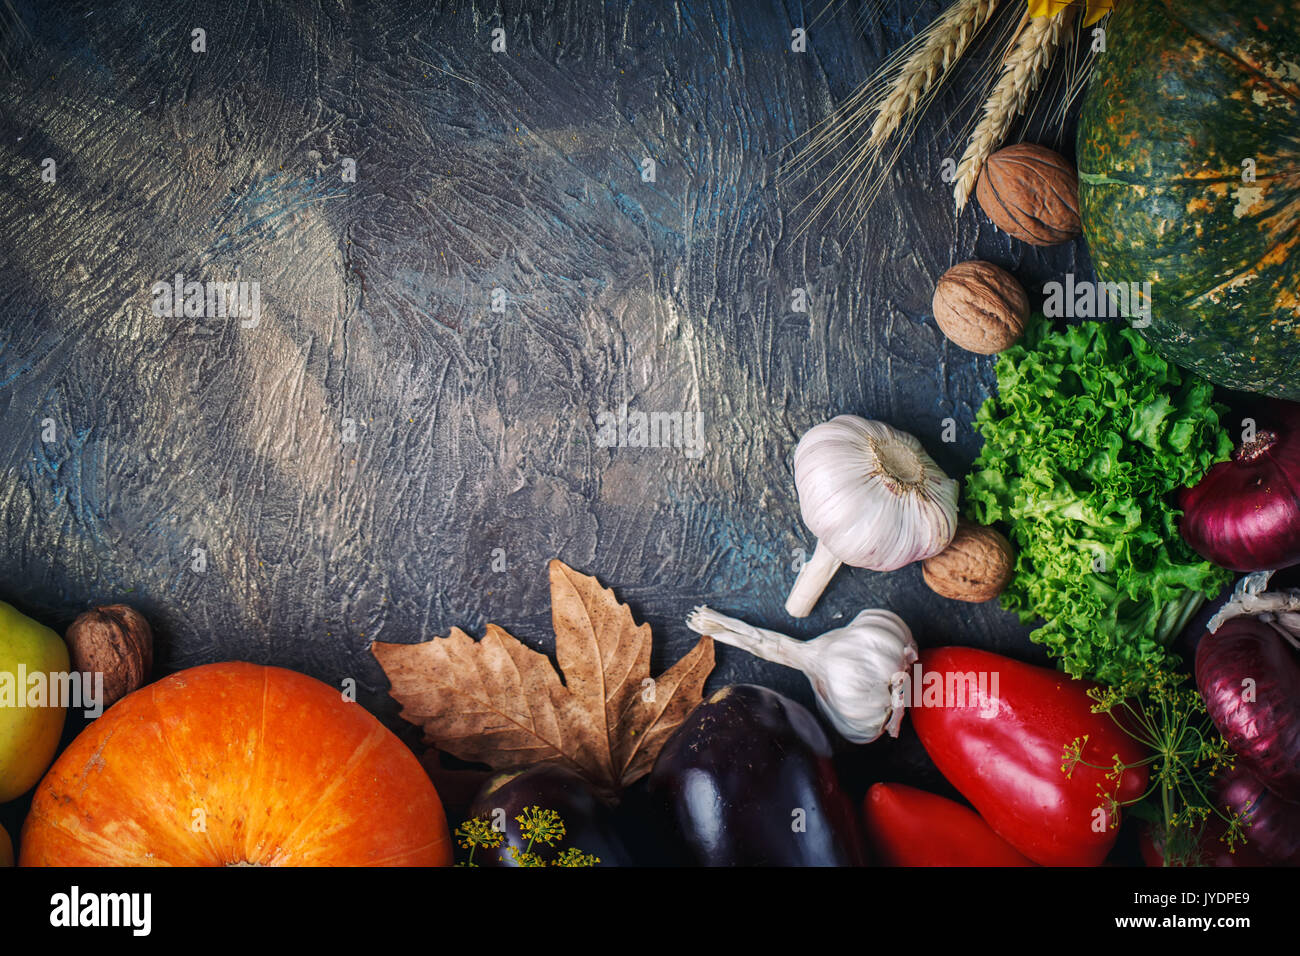 La tabella, decorato con verdure e frutti. Harvest Festival,felice ringraziamento. Foto Stock